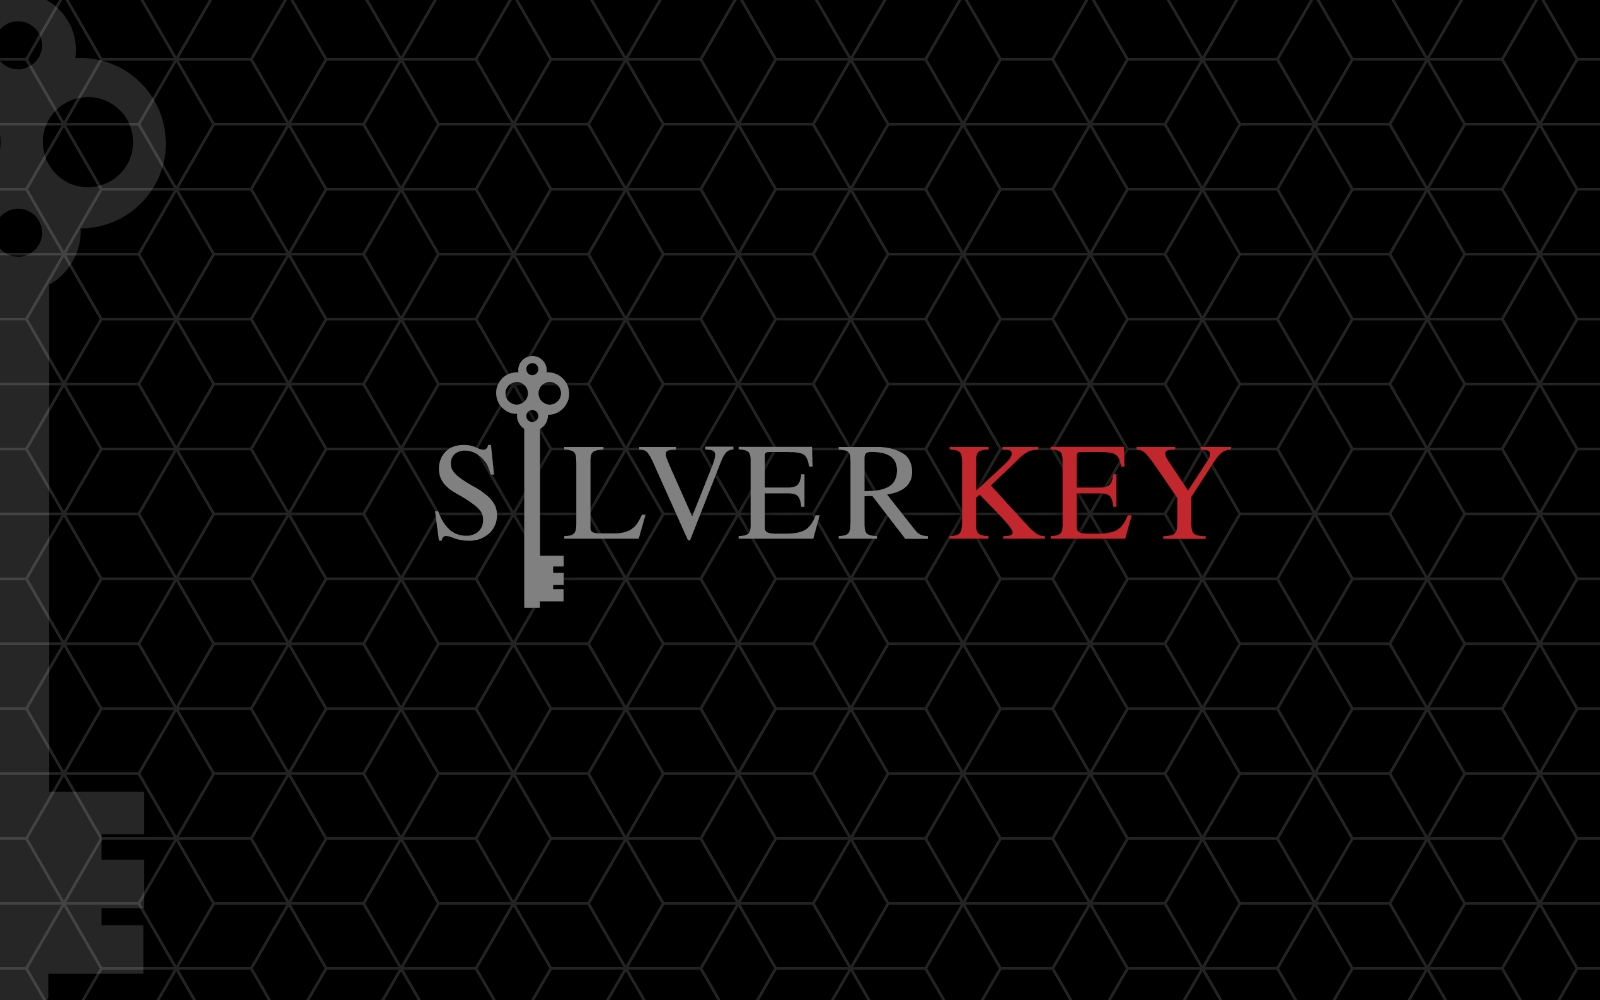 Silverkey Image